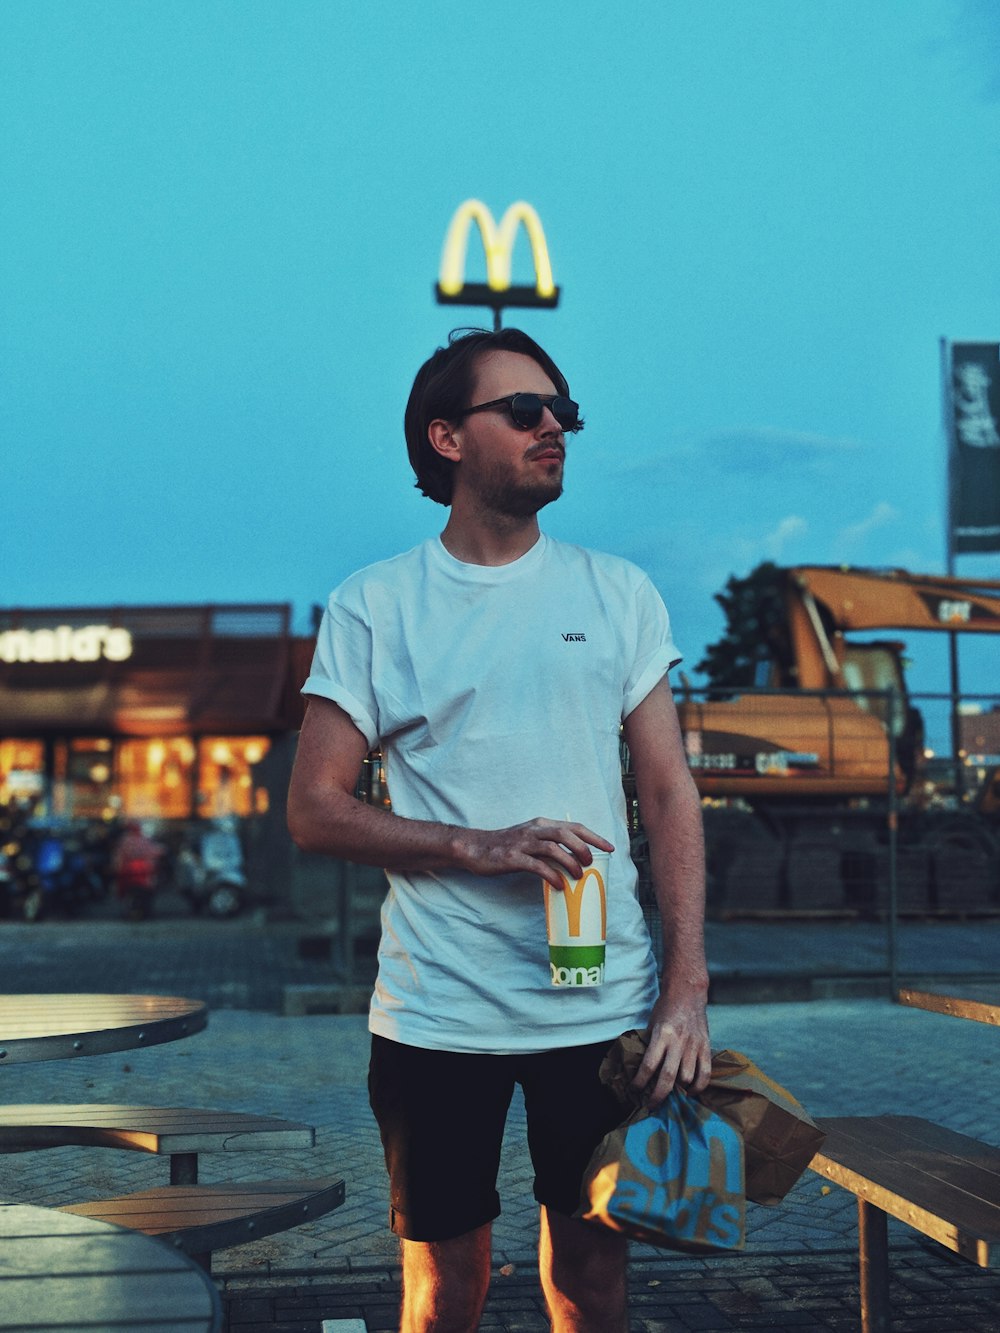 Mann mit McDonald-Becher neben Campingtisch